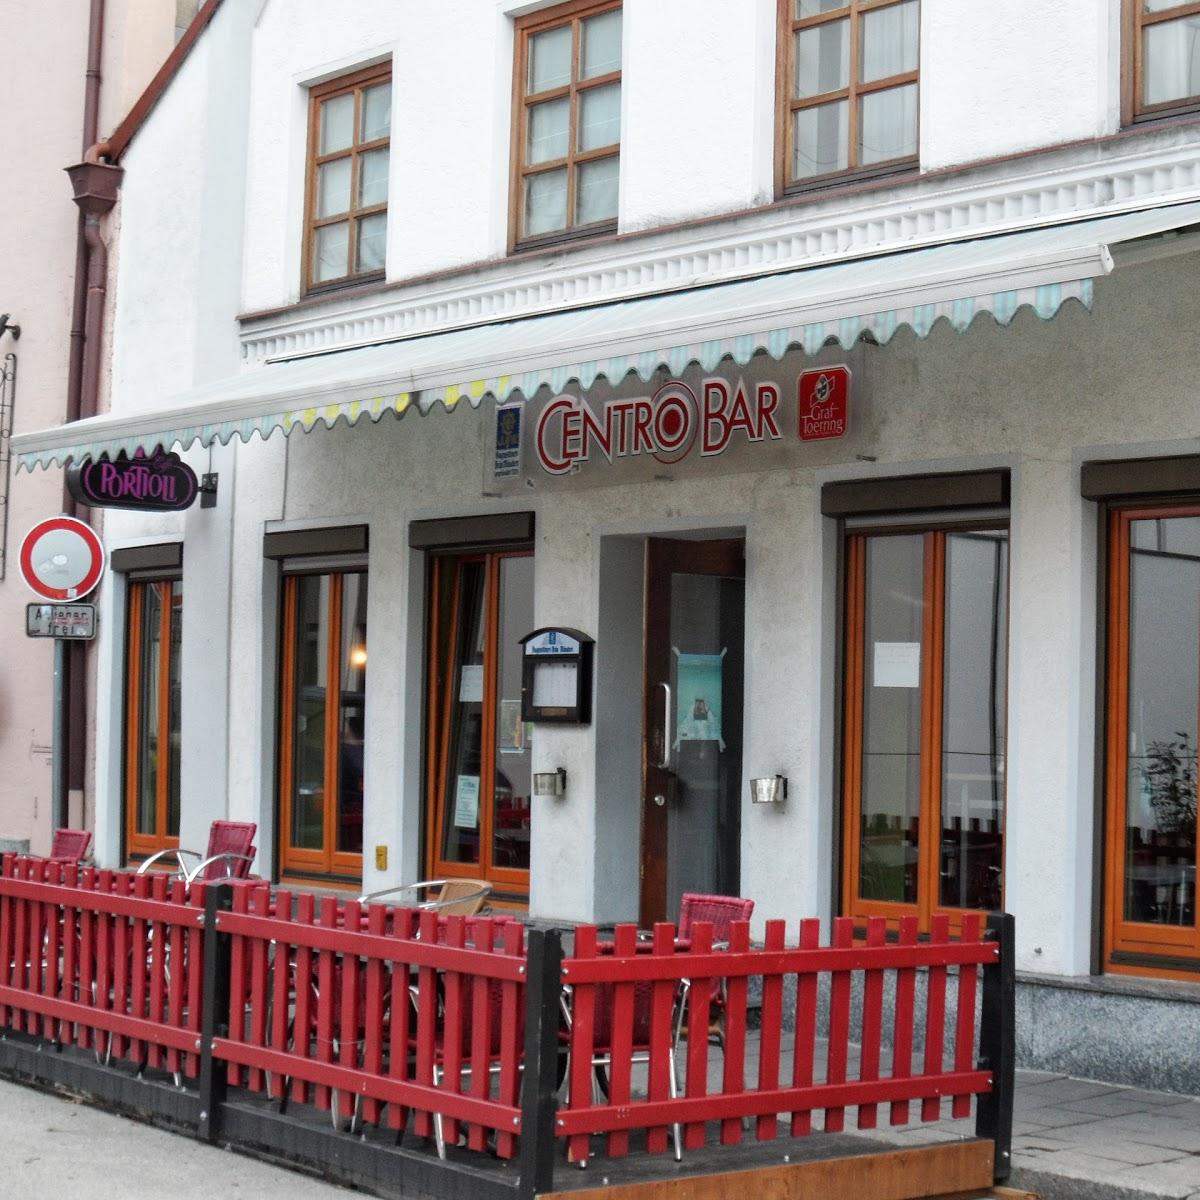 Restaurant "Centro Bar" in Pfaffenhofen an der Ilm